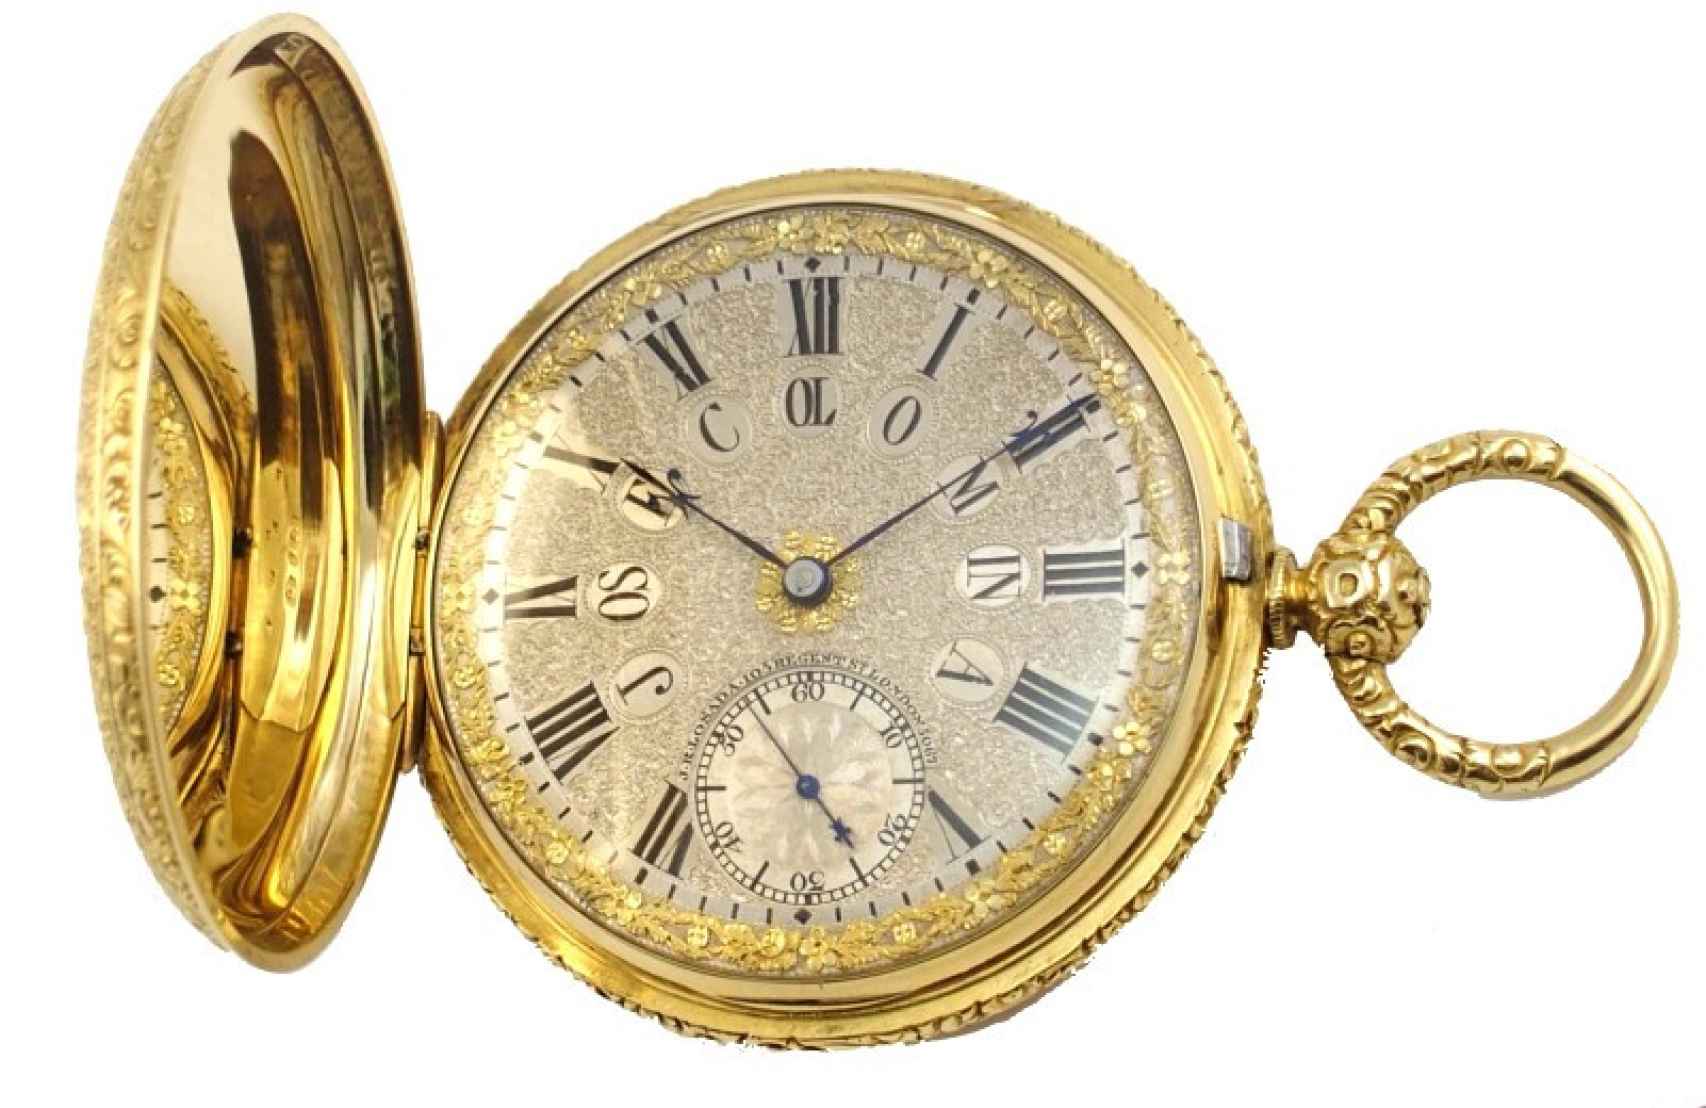 Reloj de bolsillo fabricado por Losada.